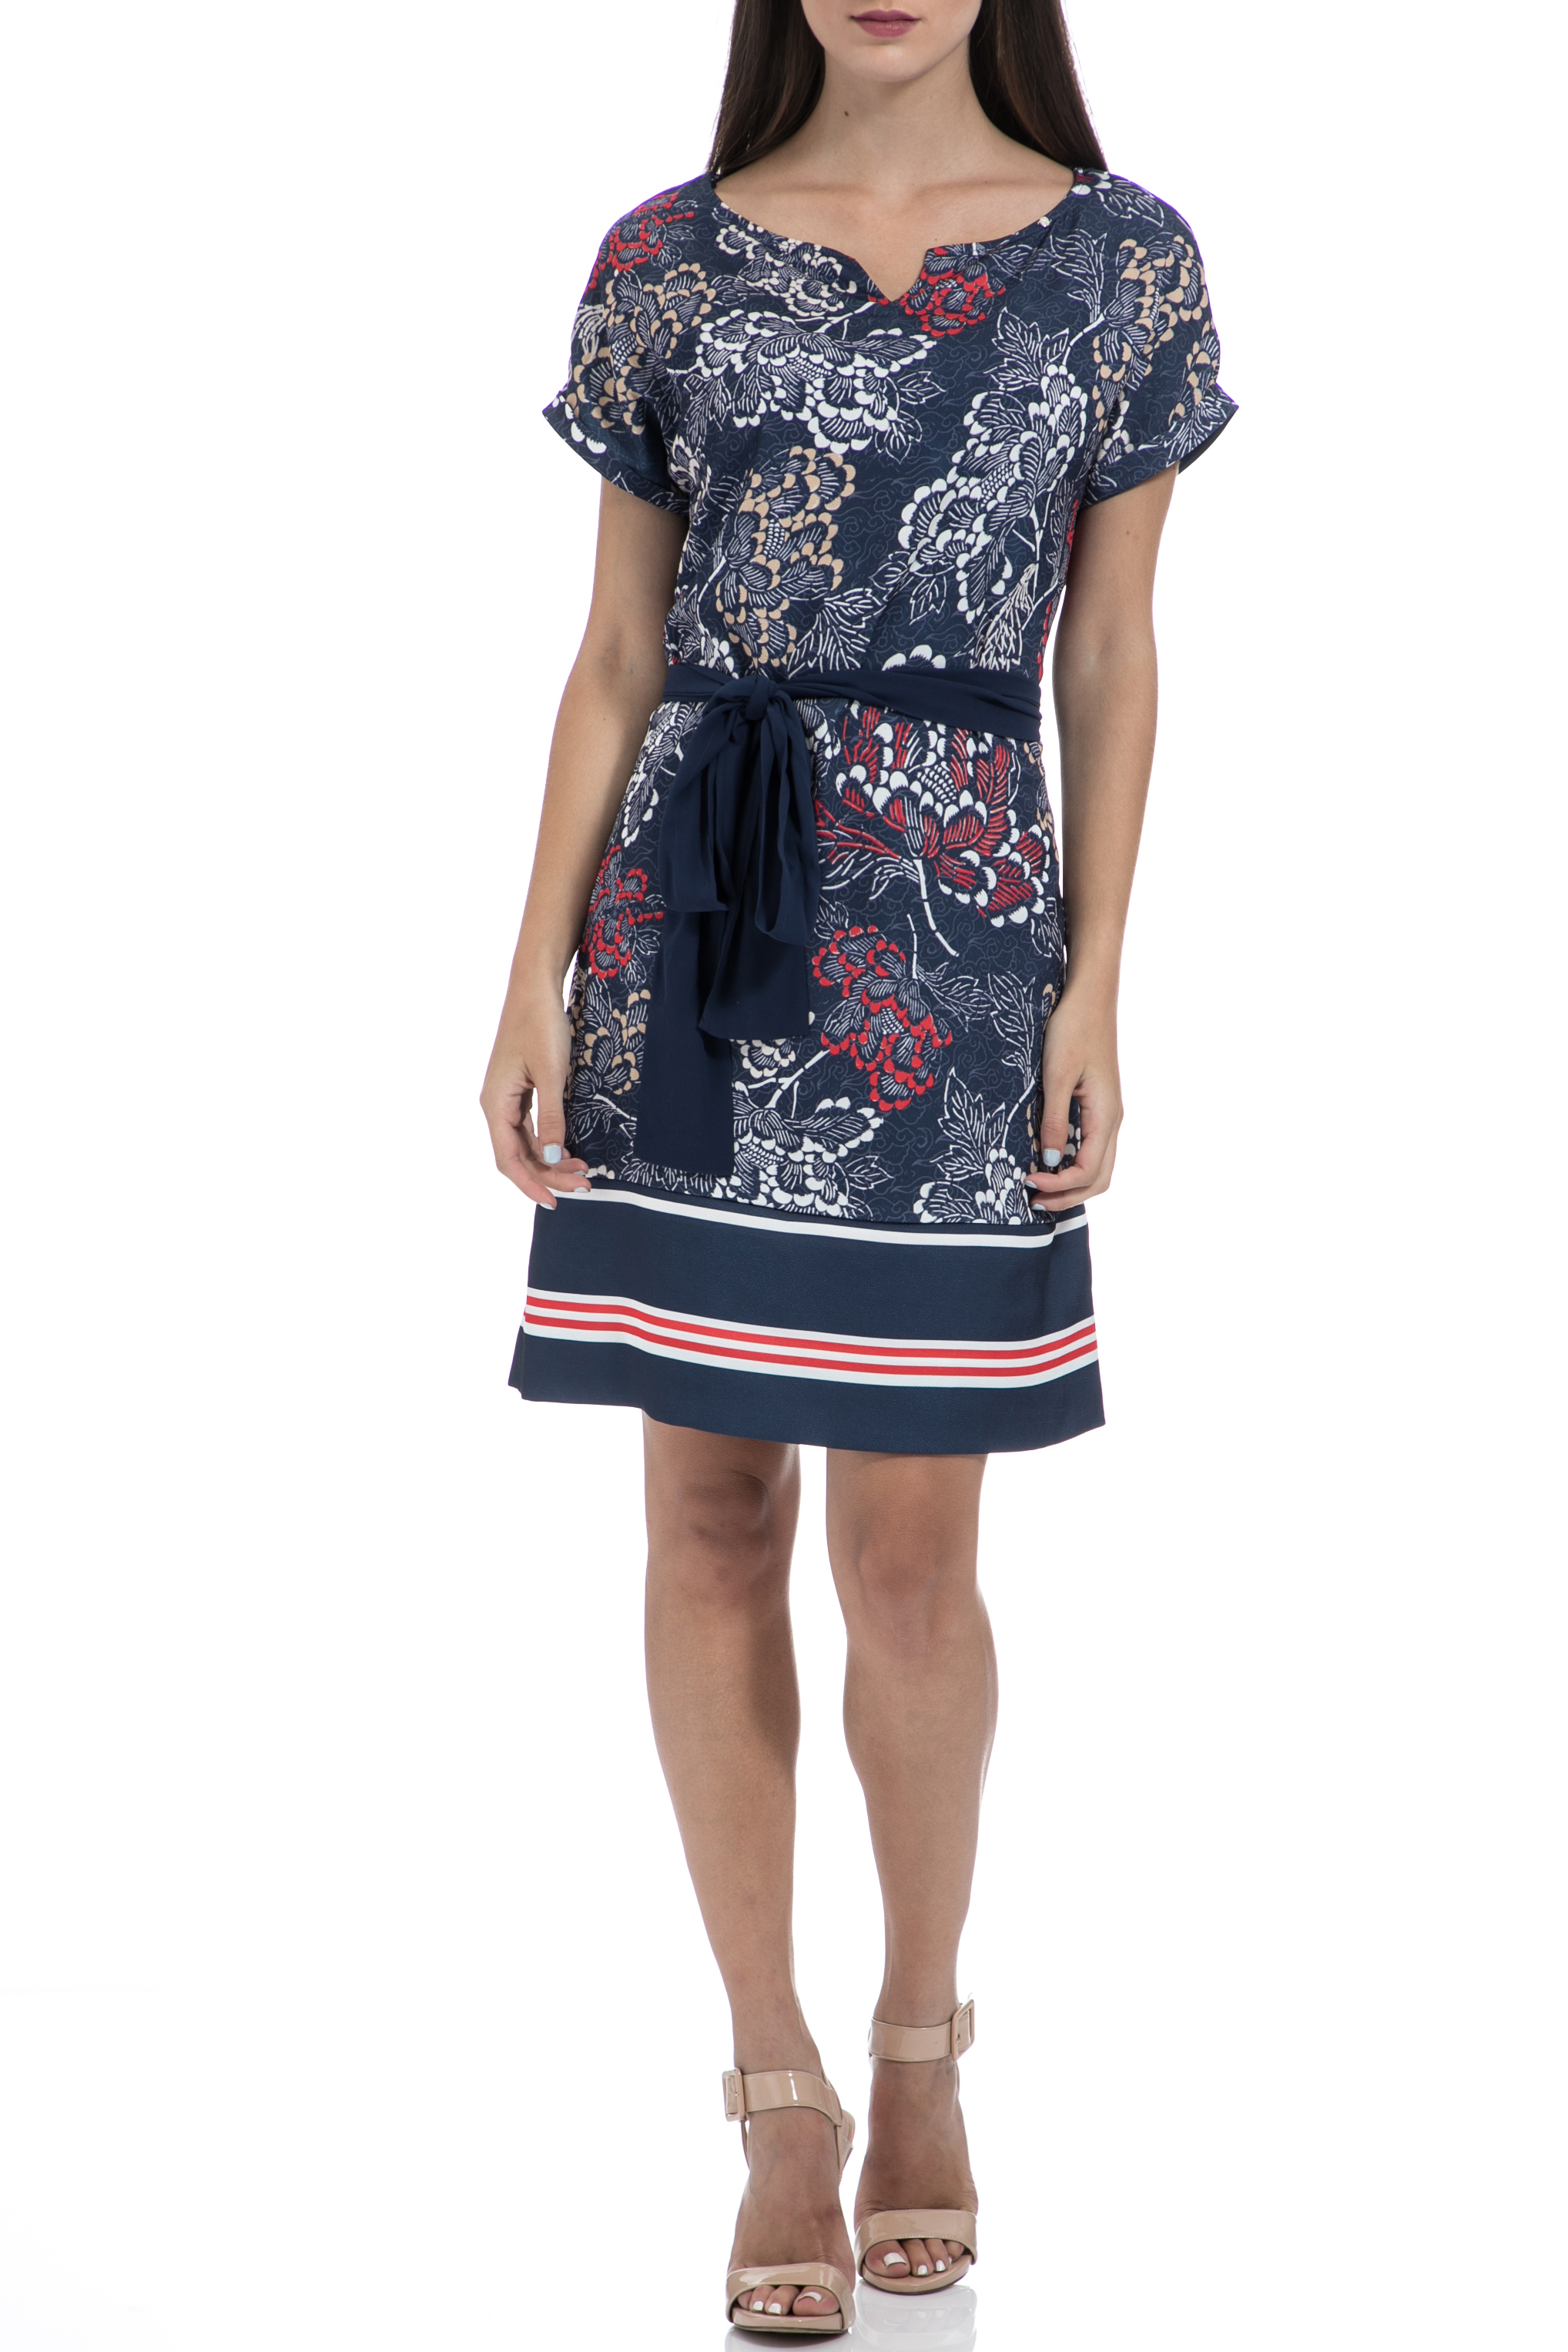 Γυναικεία/Ρούχα/Φόρεματα/Μίνι GAS - Γυναικείο φόρεμα GAS VESTITI MAISHA JAPAN FLOWERS μπλε